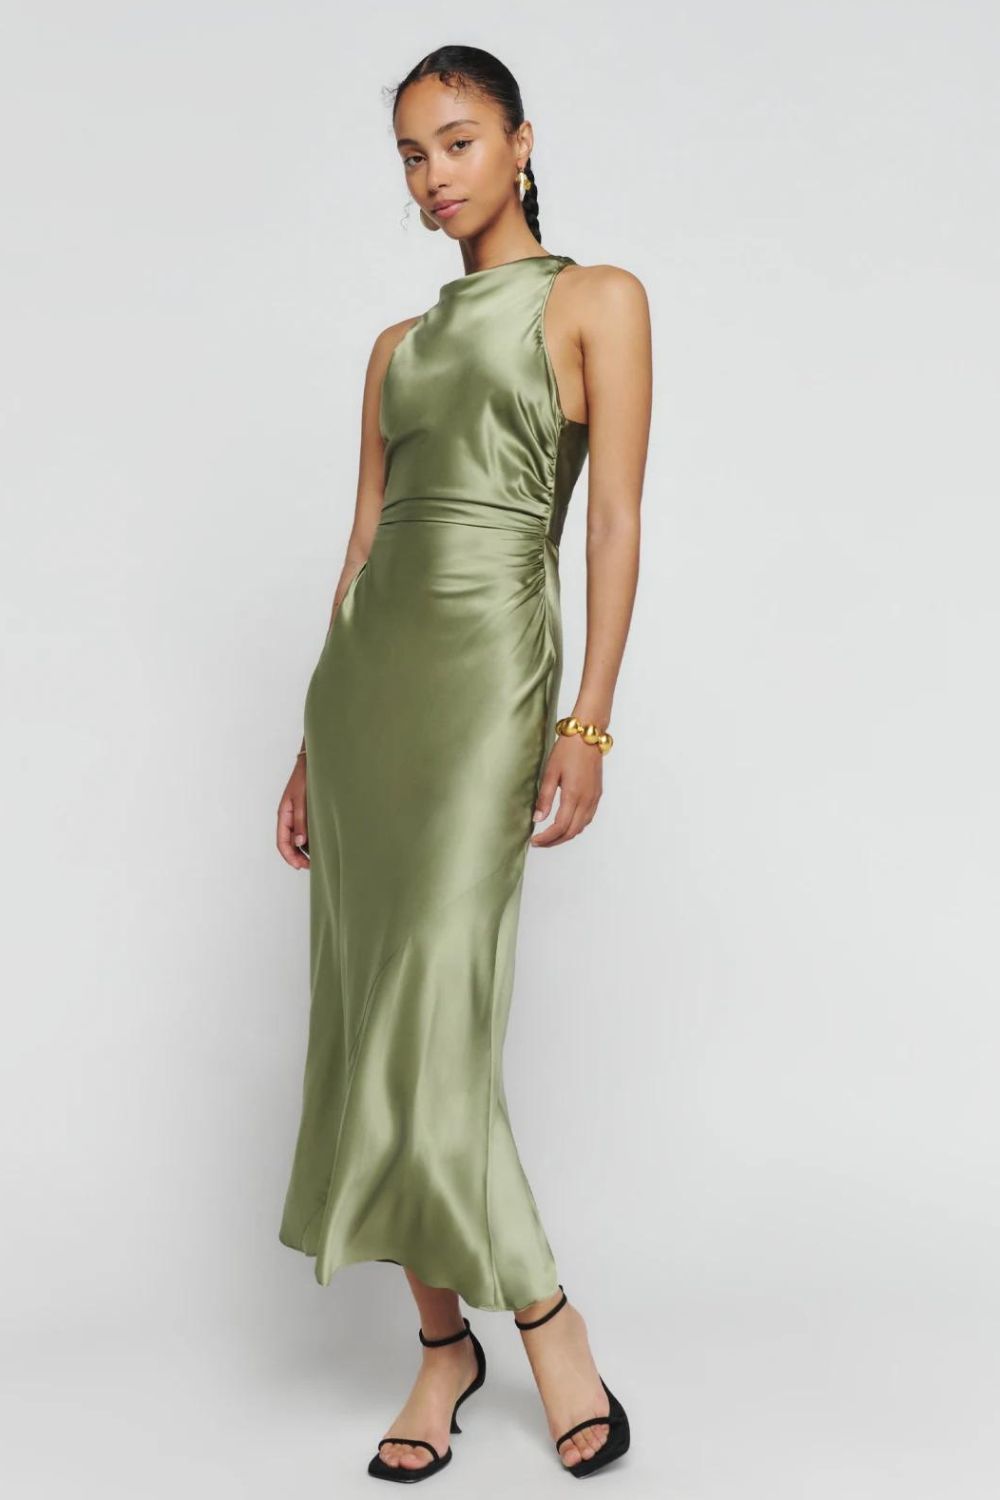 sage-green-bridesmaid dress